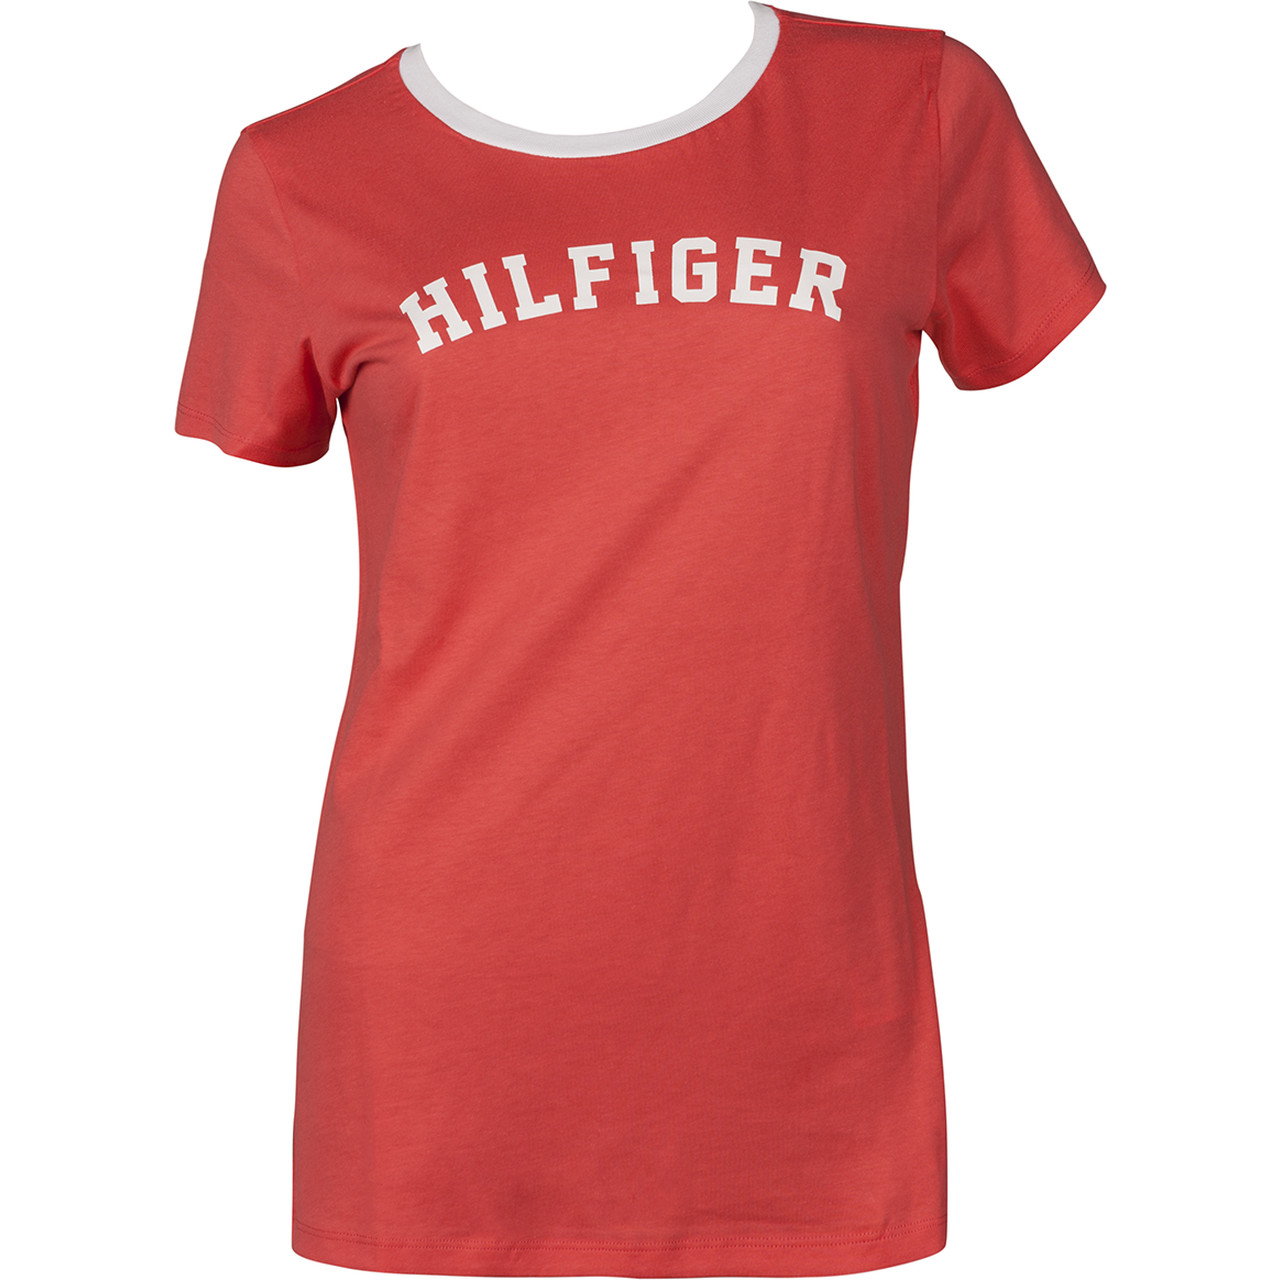 Хлопковая женская футболка Tommy Hilfiger 662 - красный 2 490 руб - купить в шоуруме, магазине, доставка с примеркой по России, Москве